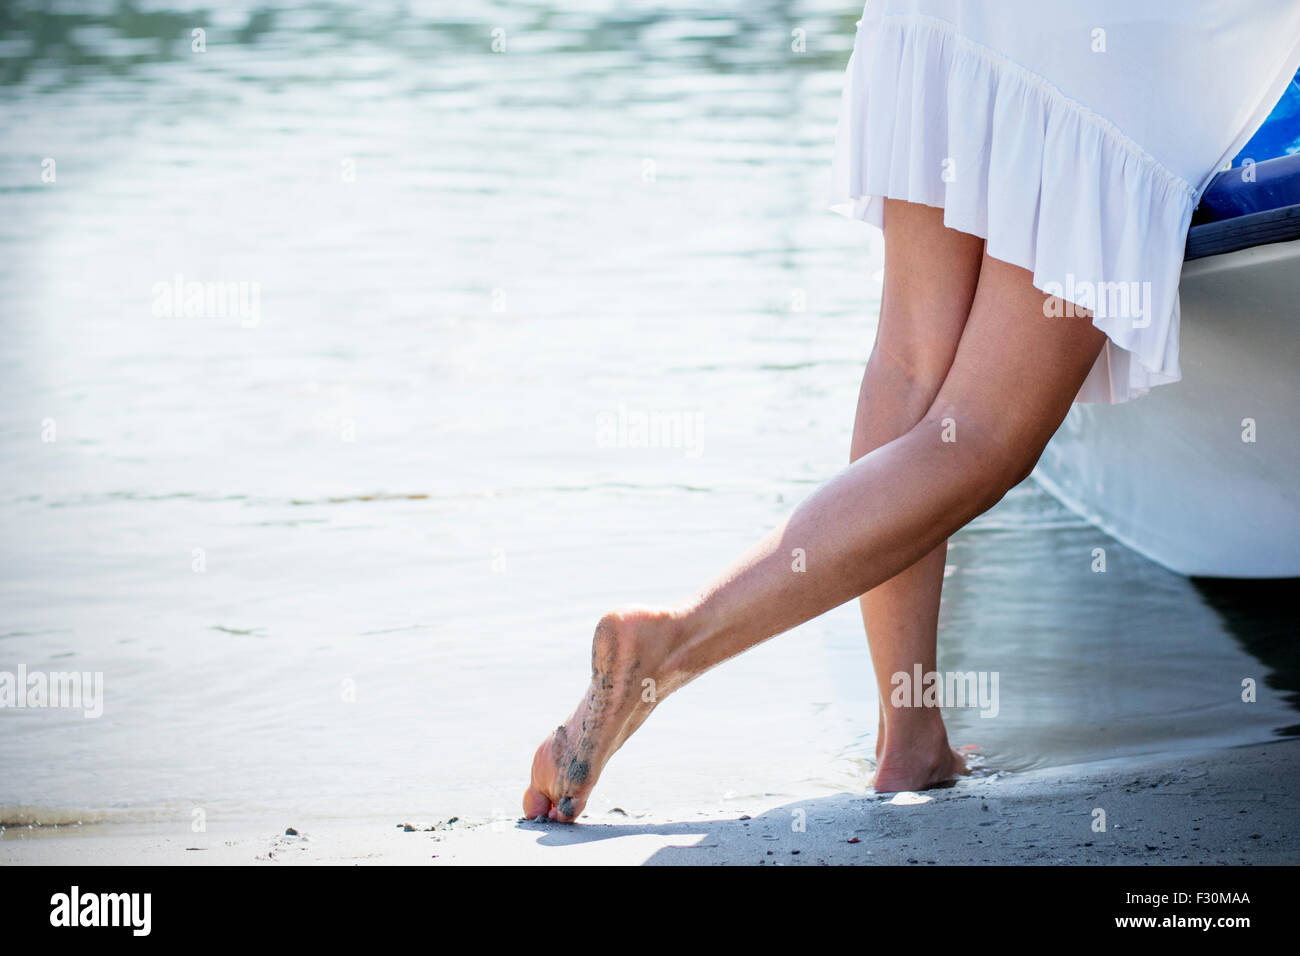 Frau im weißen Sommerkleid am Sandstrand stützte sich auf kleinen Boot. Stockfoto